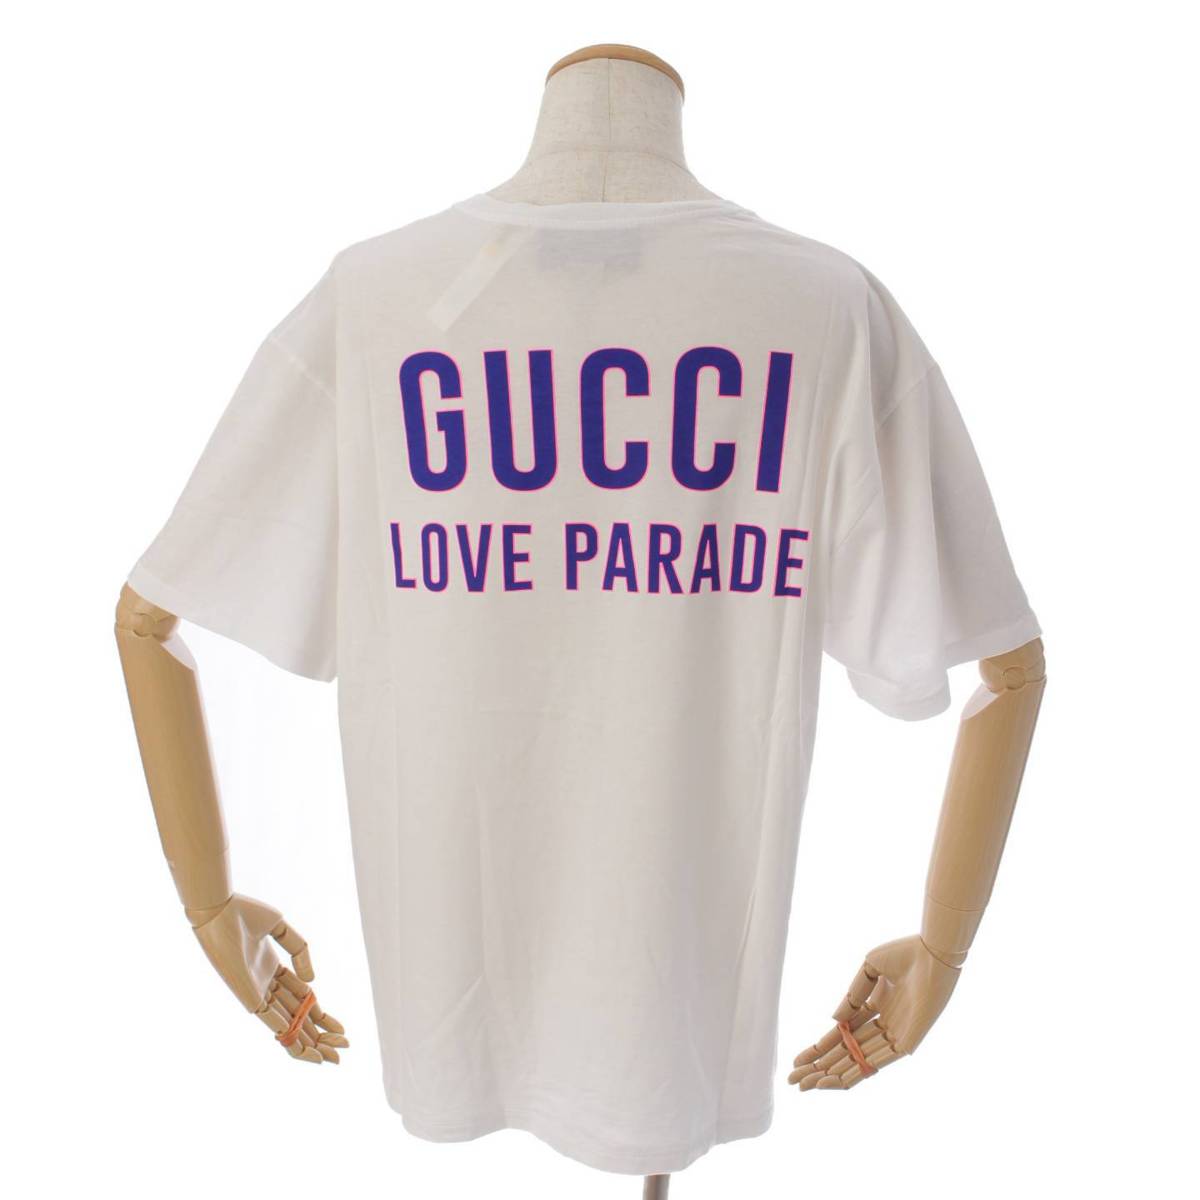 Ob`(Gucci) LOVE PARADE vg TVc gbvX 548334 zCg XL